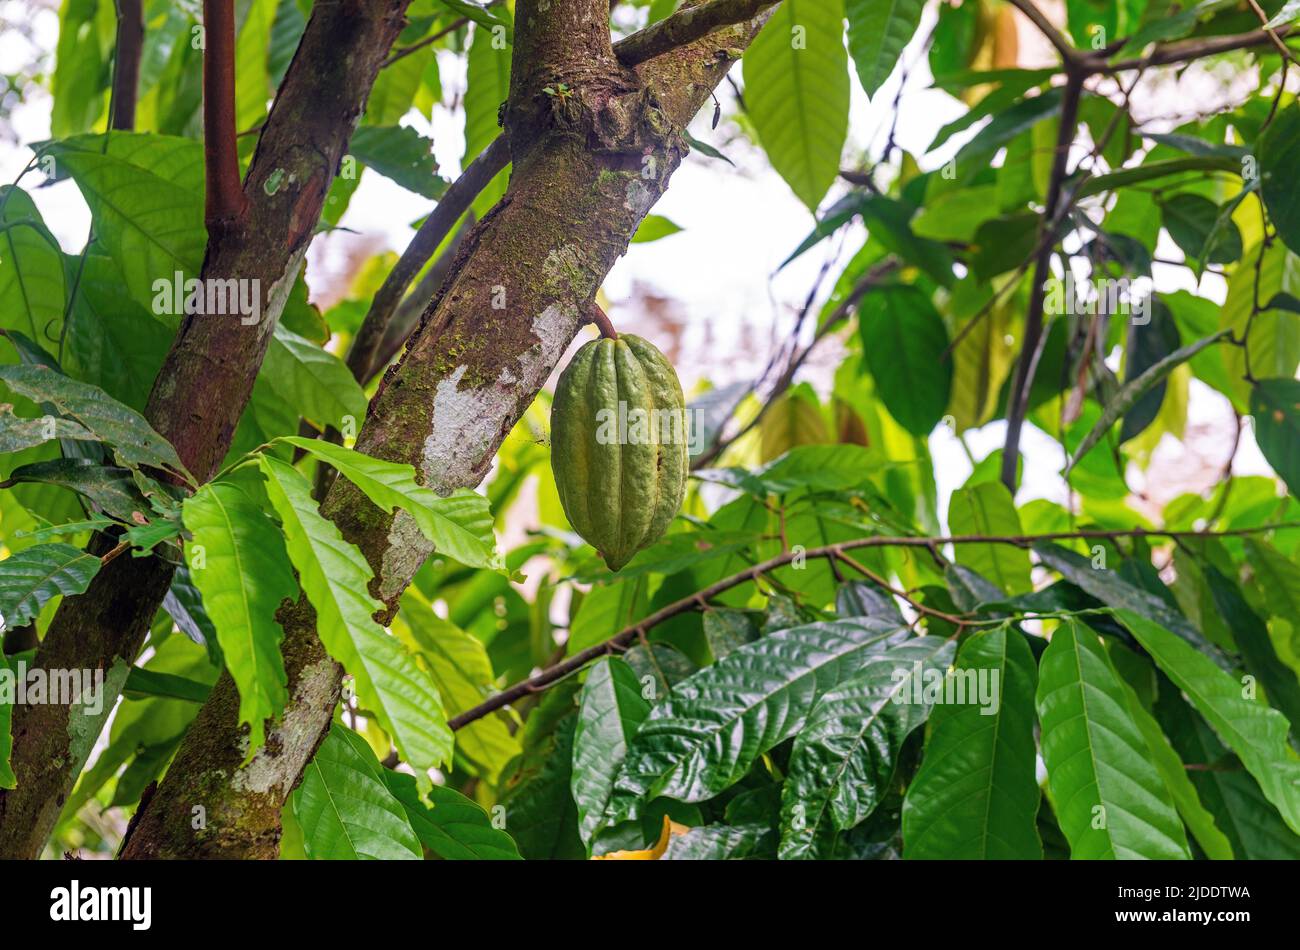 Frutos de vaina de cacao de aroma fino verde o inmaduro (Theobroma cacao) en árbol de cacao, selva amazónica, Ecuador. Foto de stock